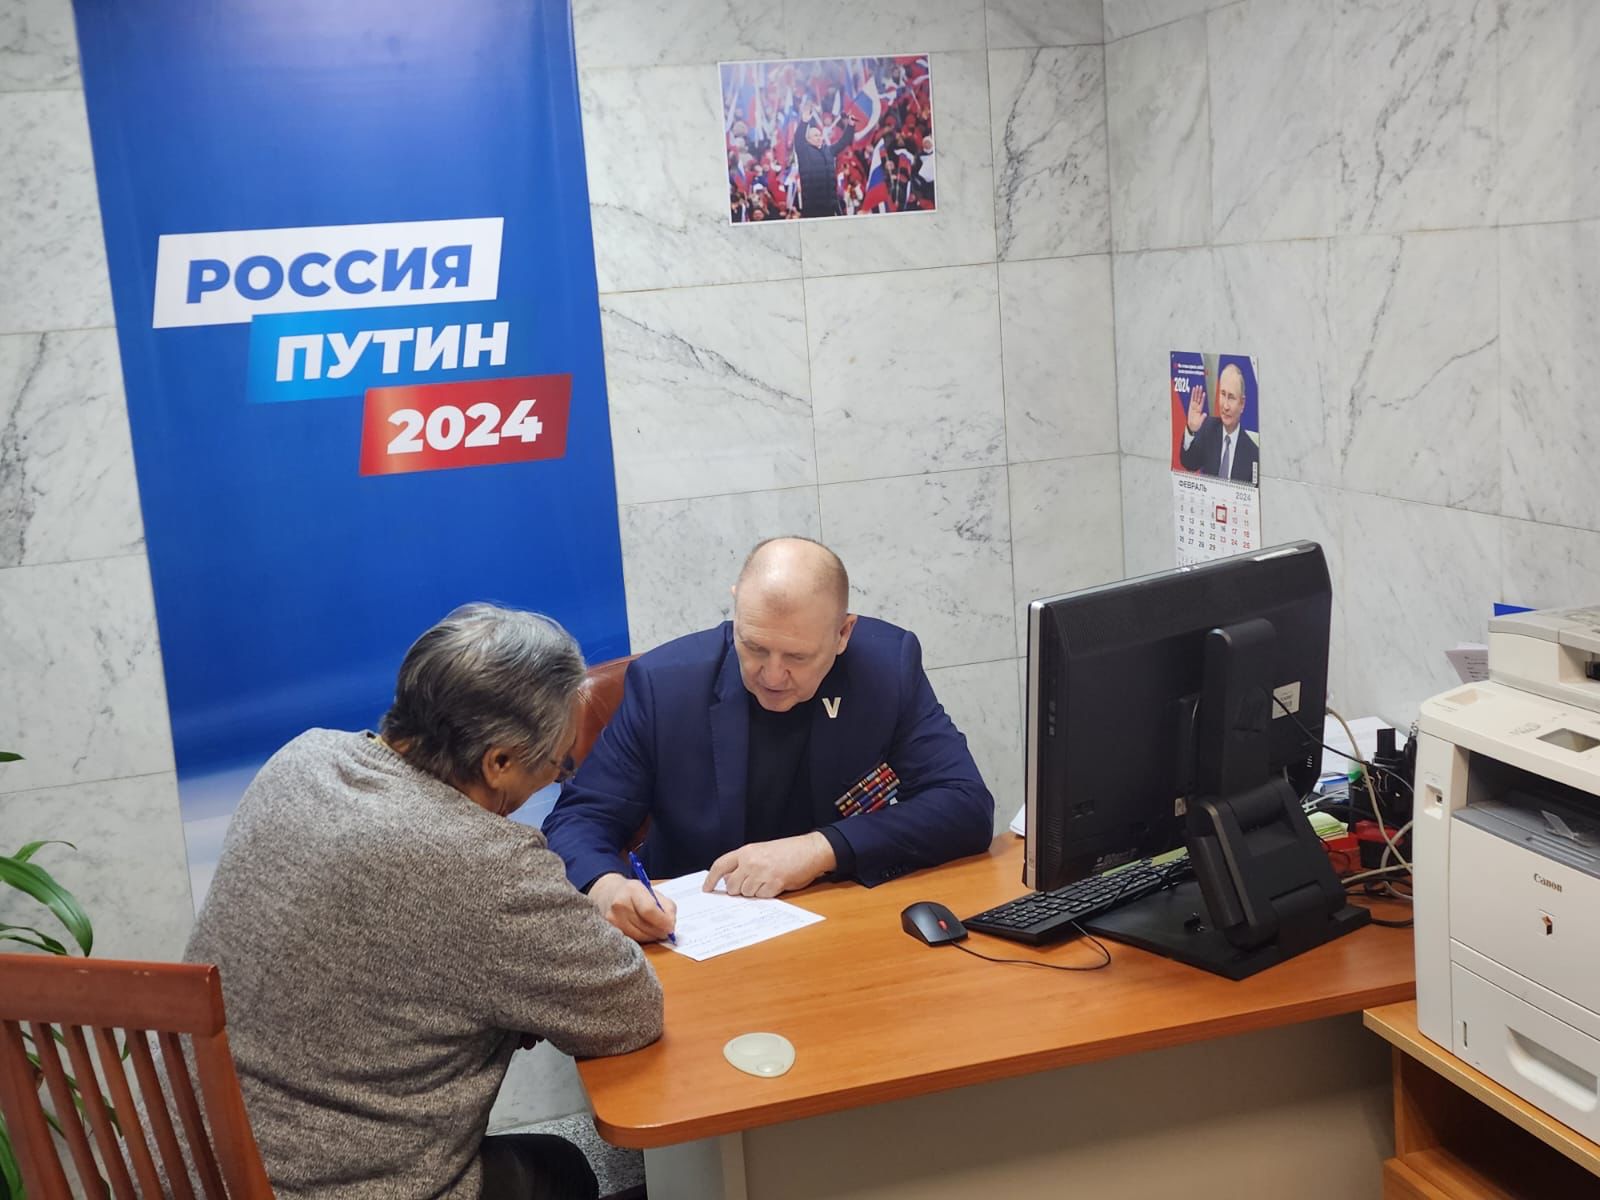 Отец участника СВО из Якутска передал Путину предложение адресно помогать семьям военнослужащих